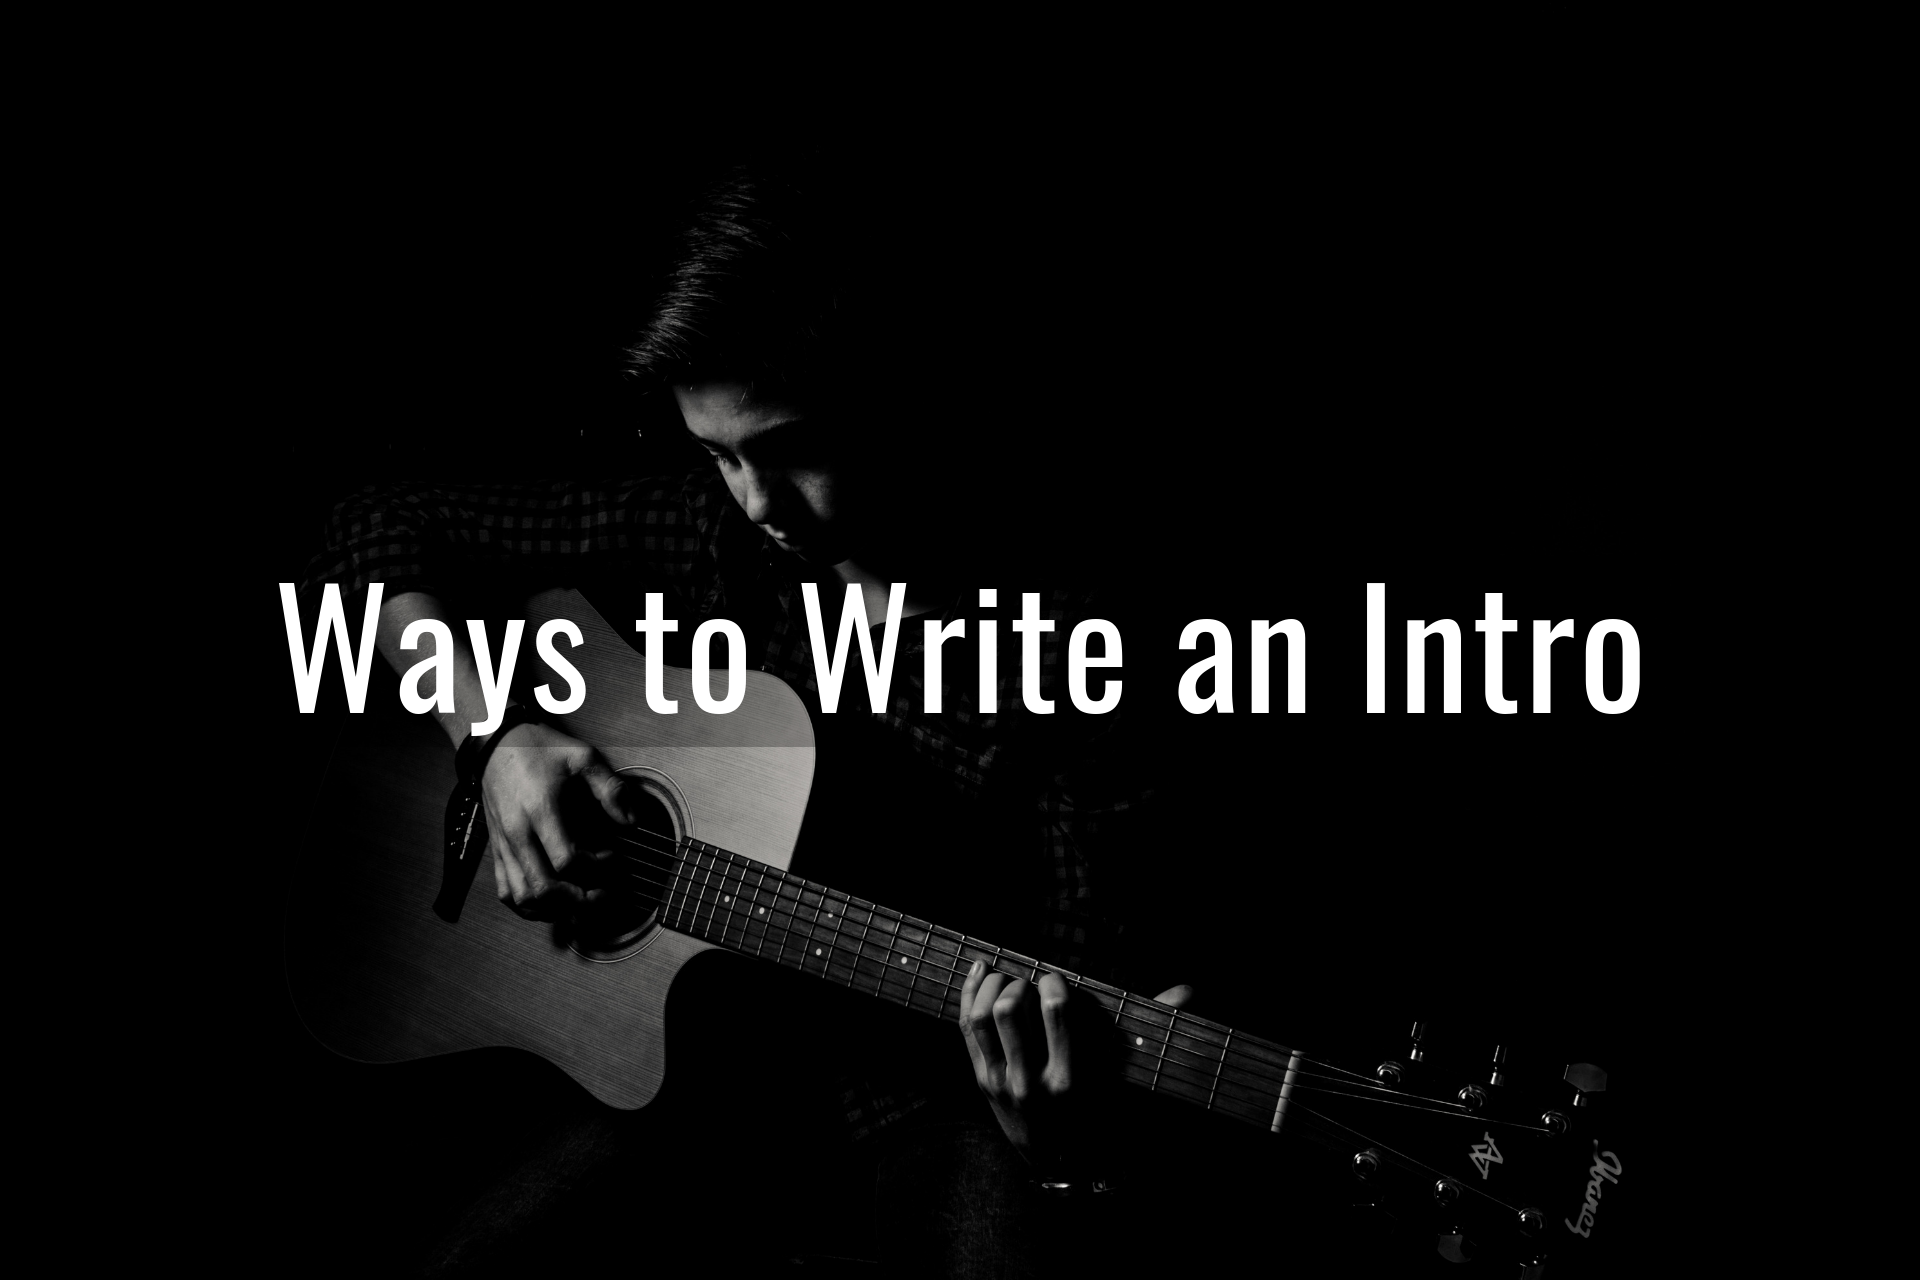 Write an Intro